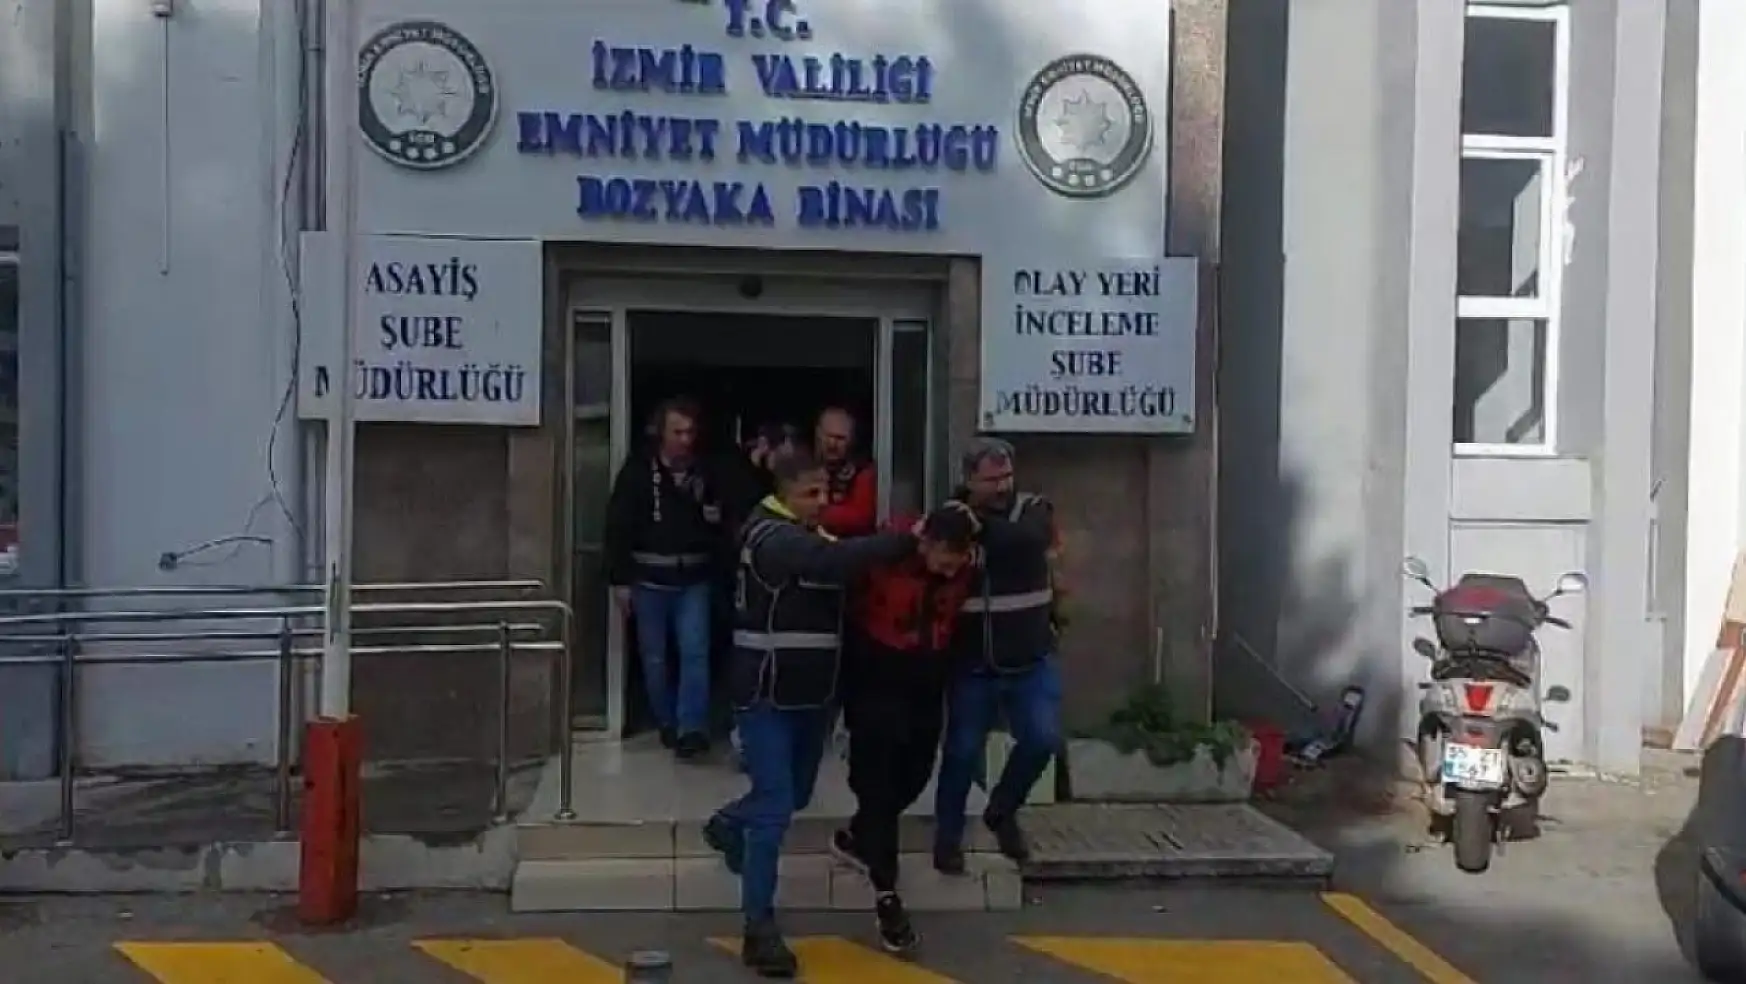 İzmir'den araba çaldılar!.. Karaman'a götürdüler: Üç kişi yakalandı